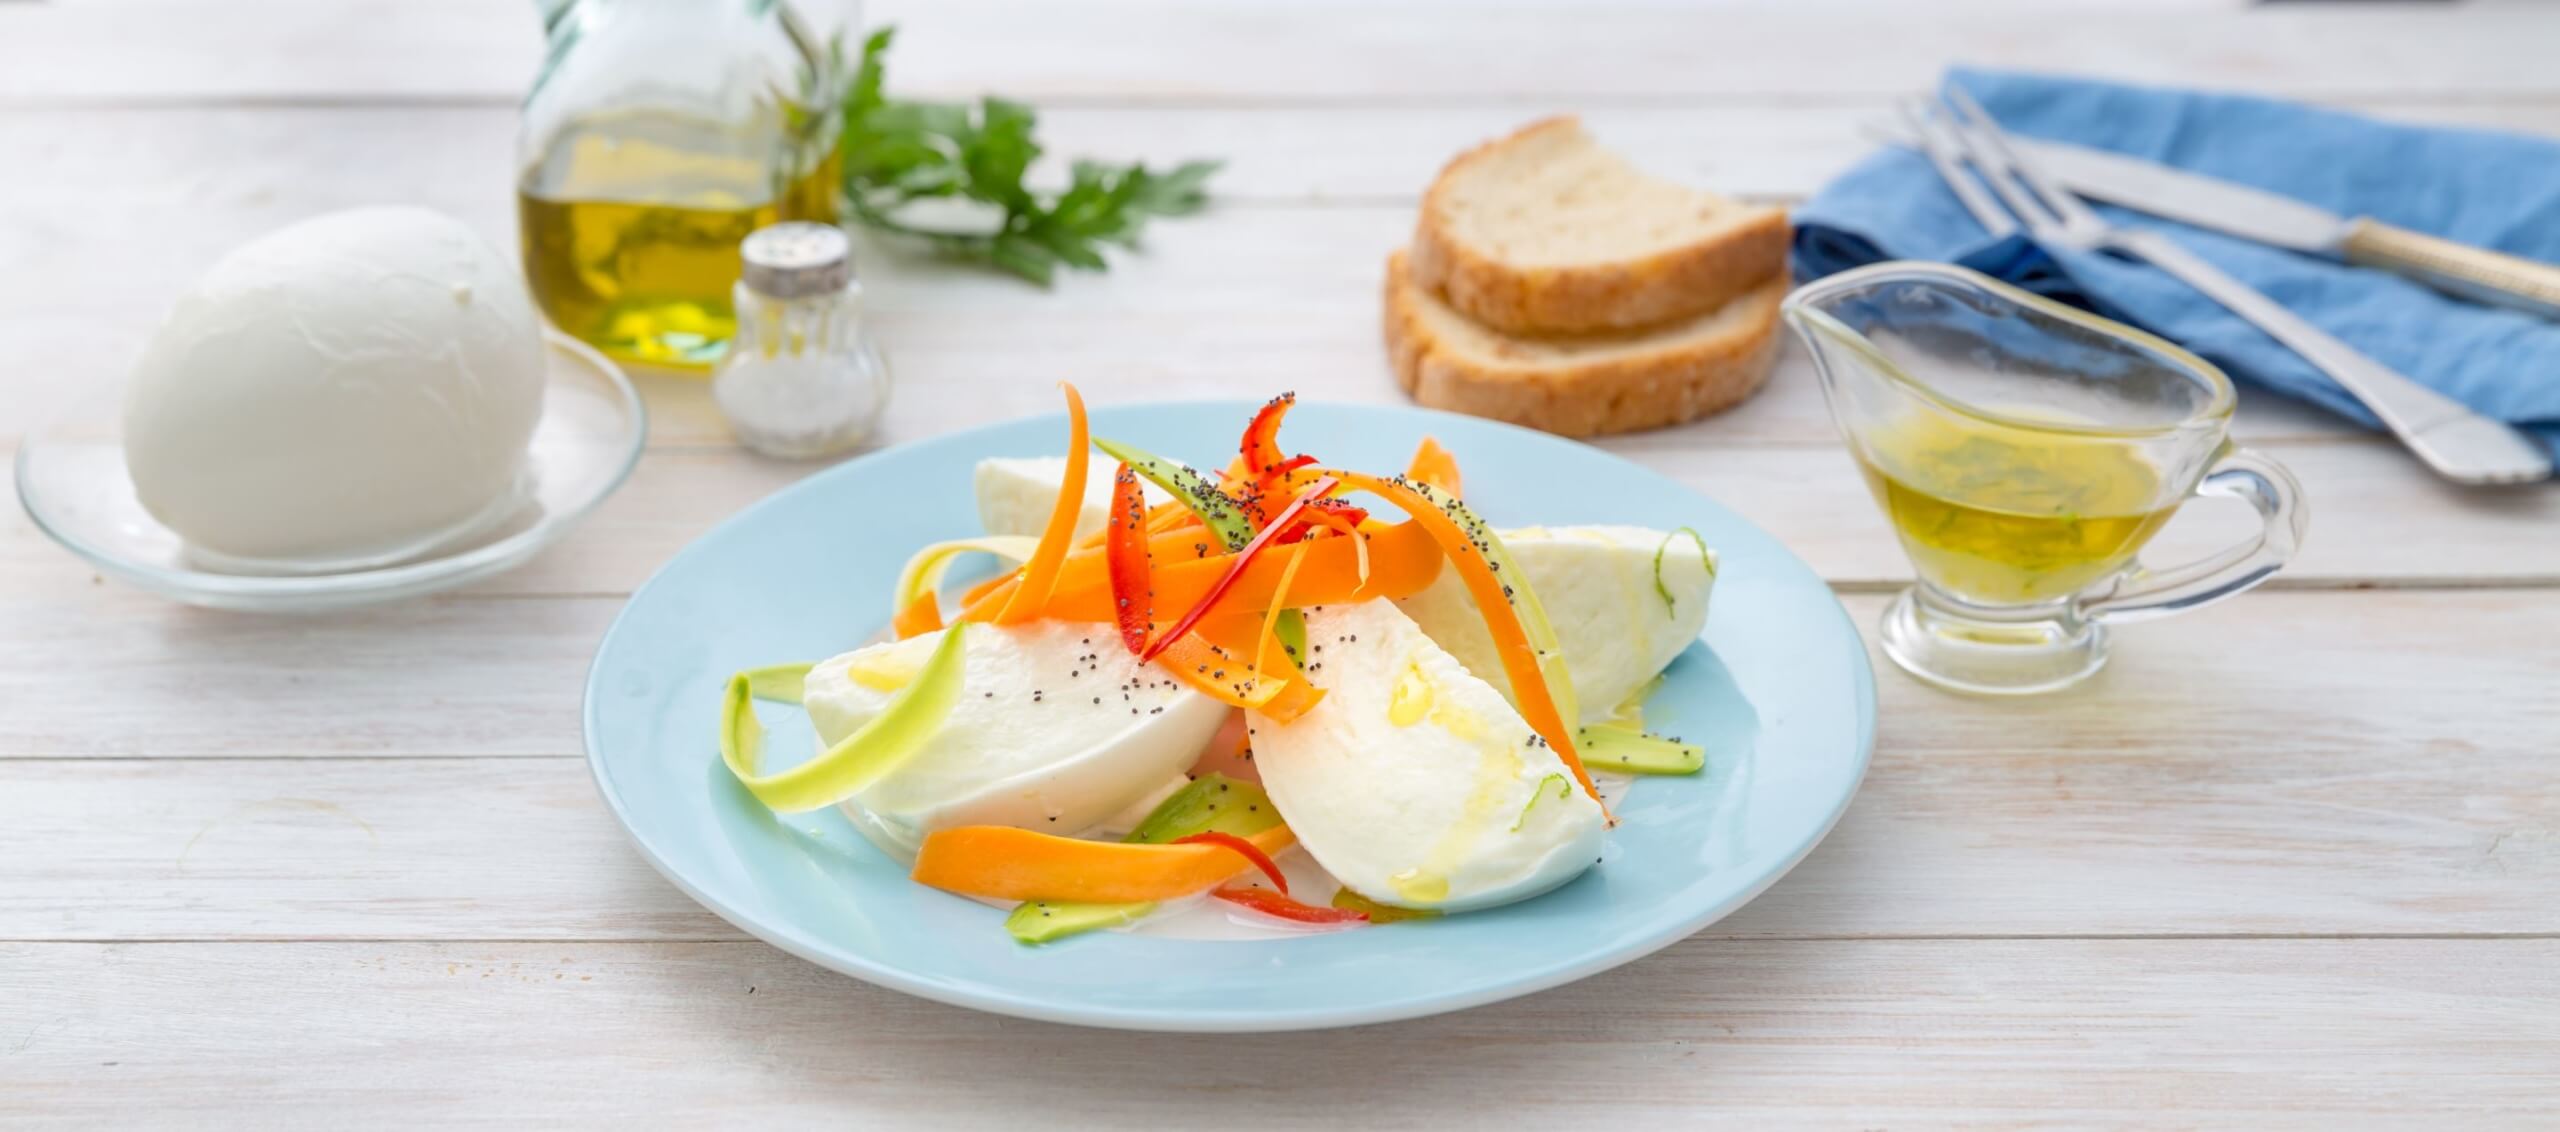 Rezept | Sommergemüse-Salat mit Mozzarella | Einfache Küche, Gesunde ...